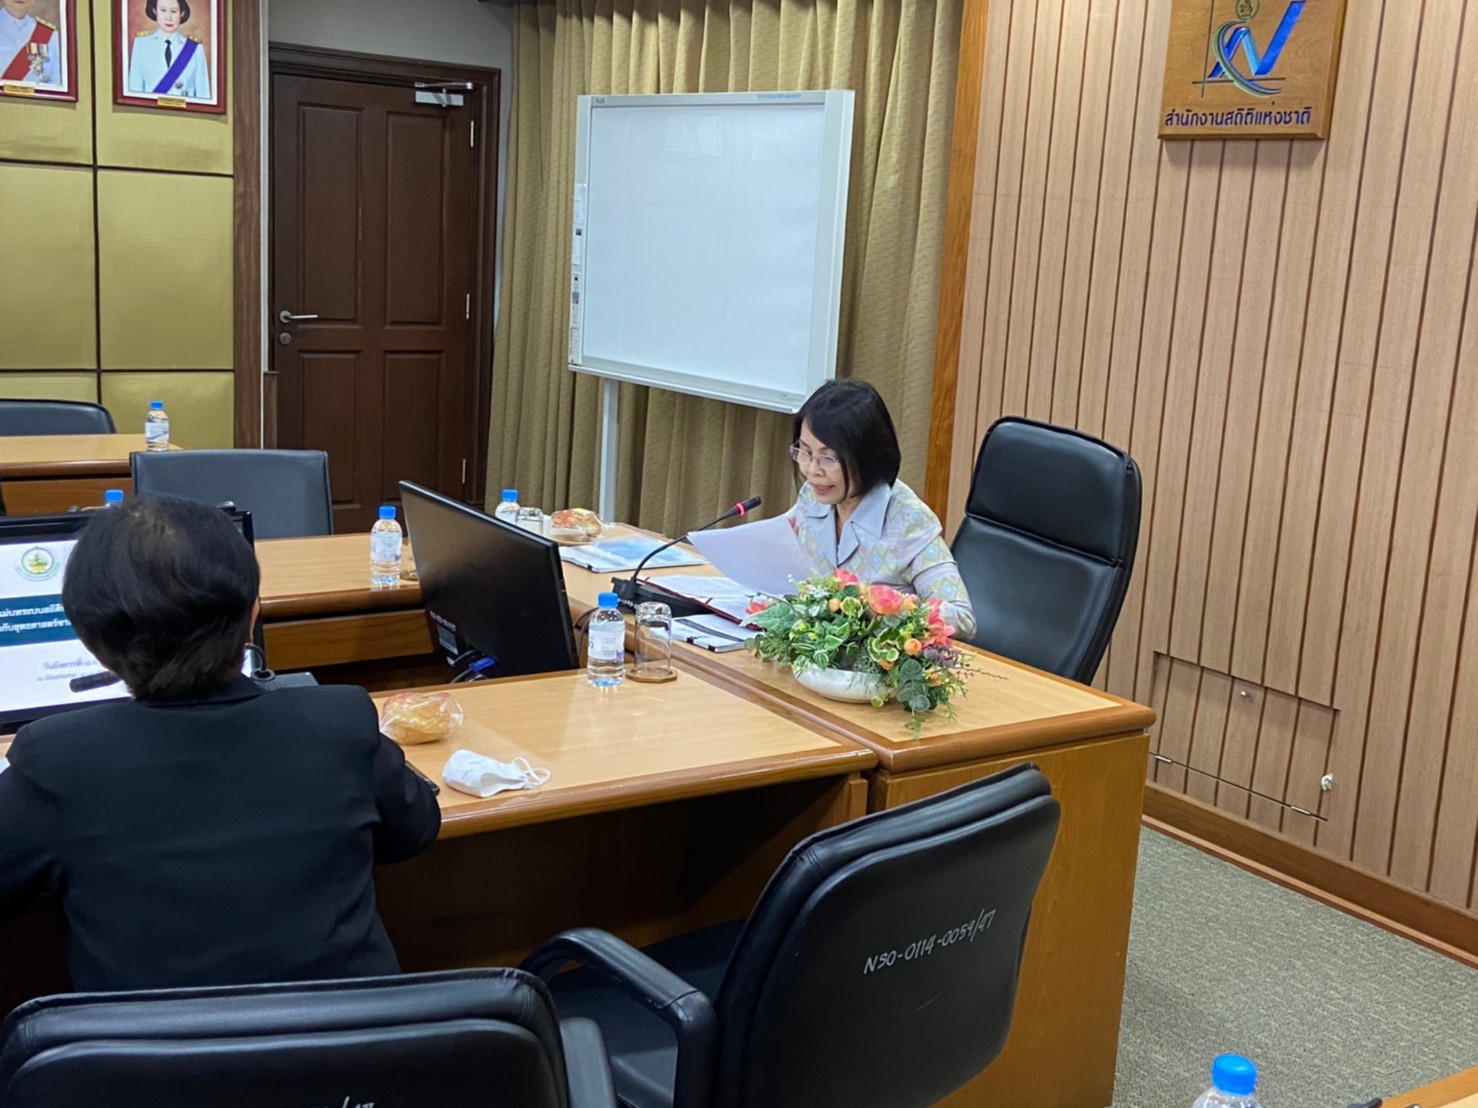  ประชุม “การปรับปรุงแผนแม่บทระบบสถิติประเทศไทย ฉบับที่ 2 (พ.ศ.2559 - 2564) ”